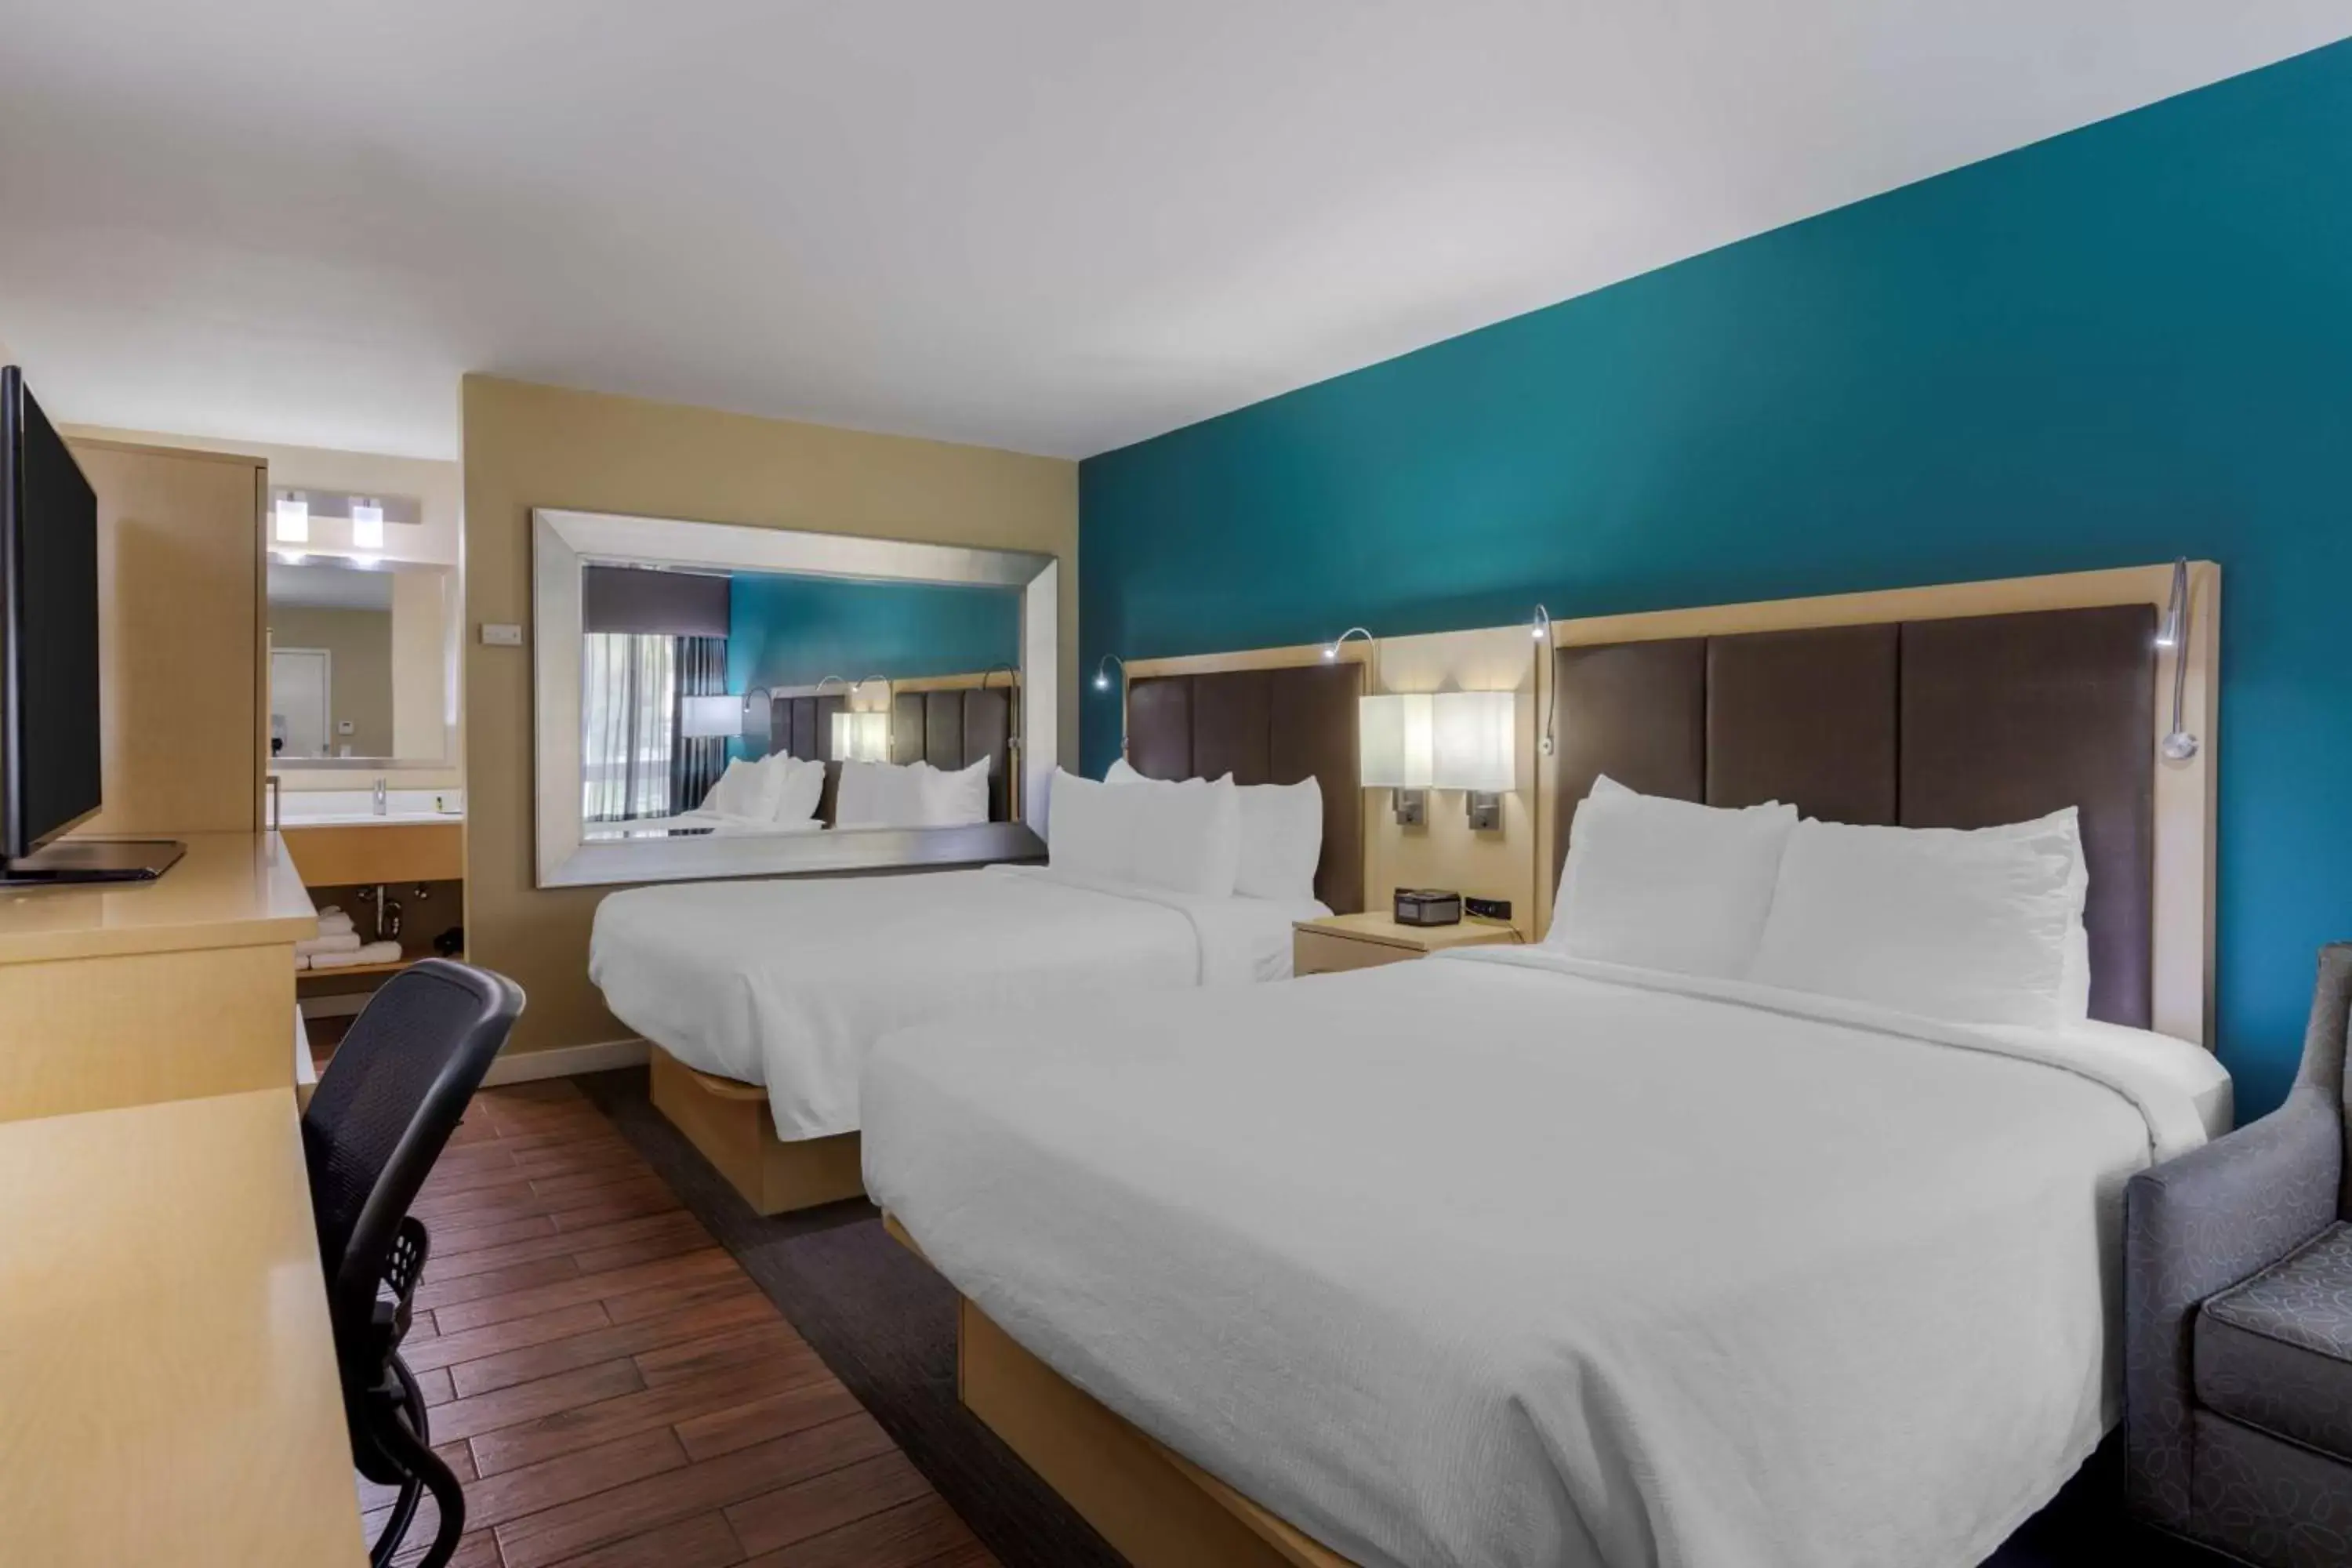 Bedroom, Bed in Best Western Plus South Coast Inn